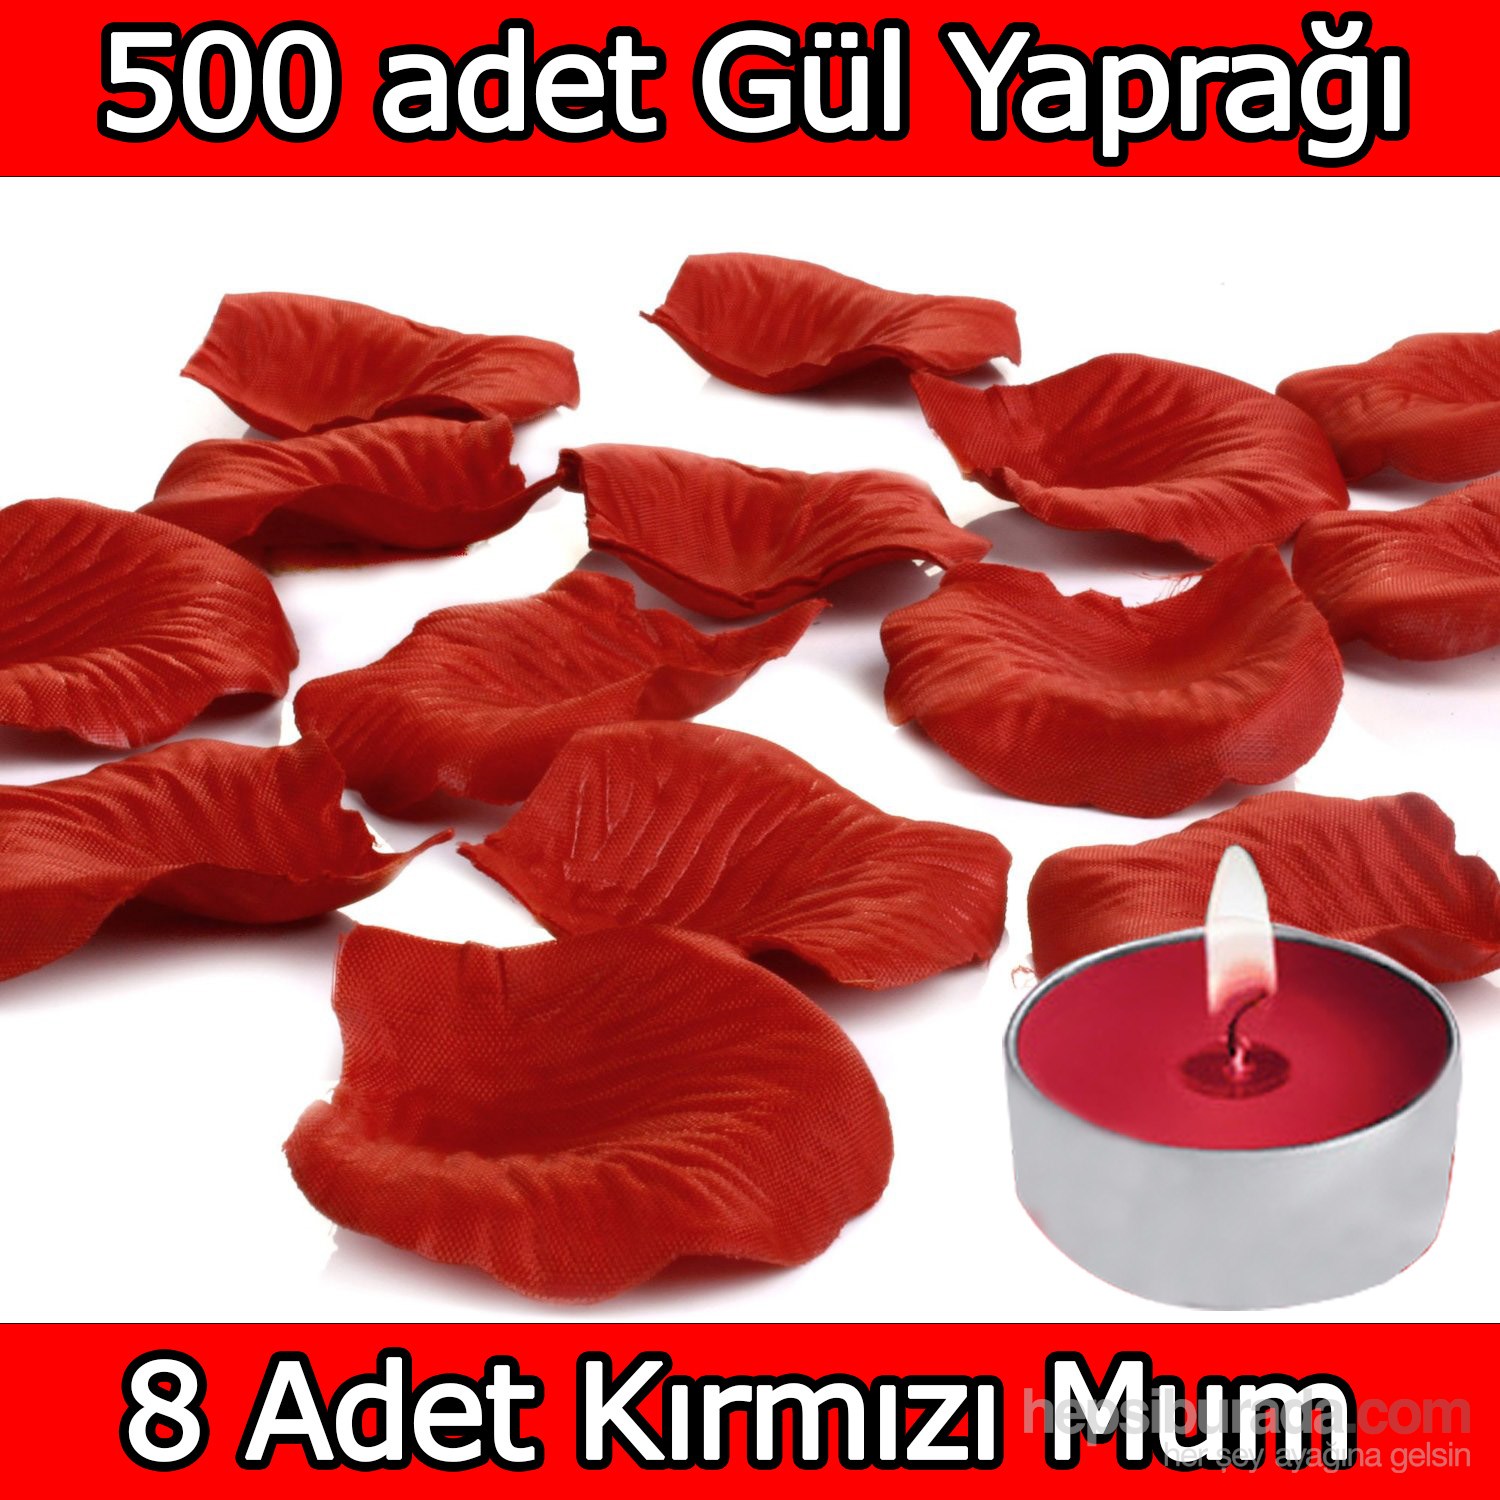 Chavin 500 Adet Gül Yaprağı-Gül Yaprakları-Kırmızı Mum